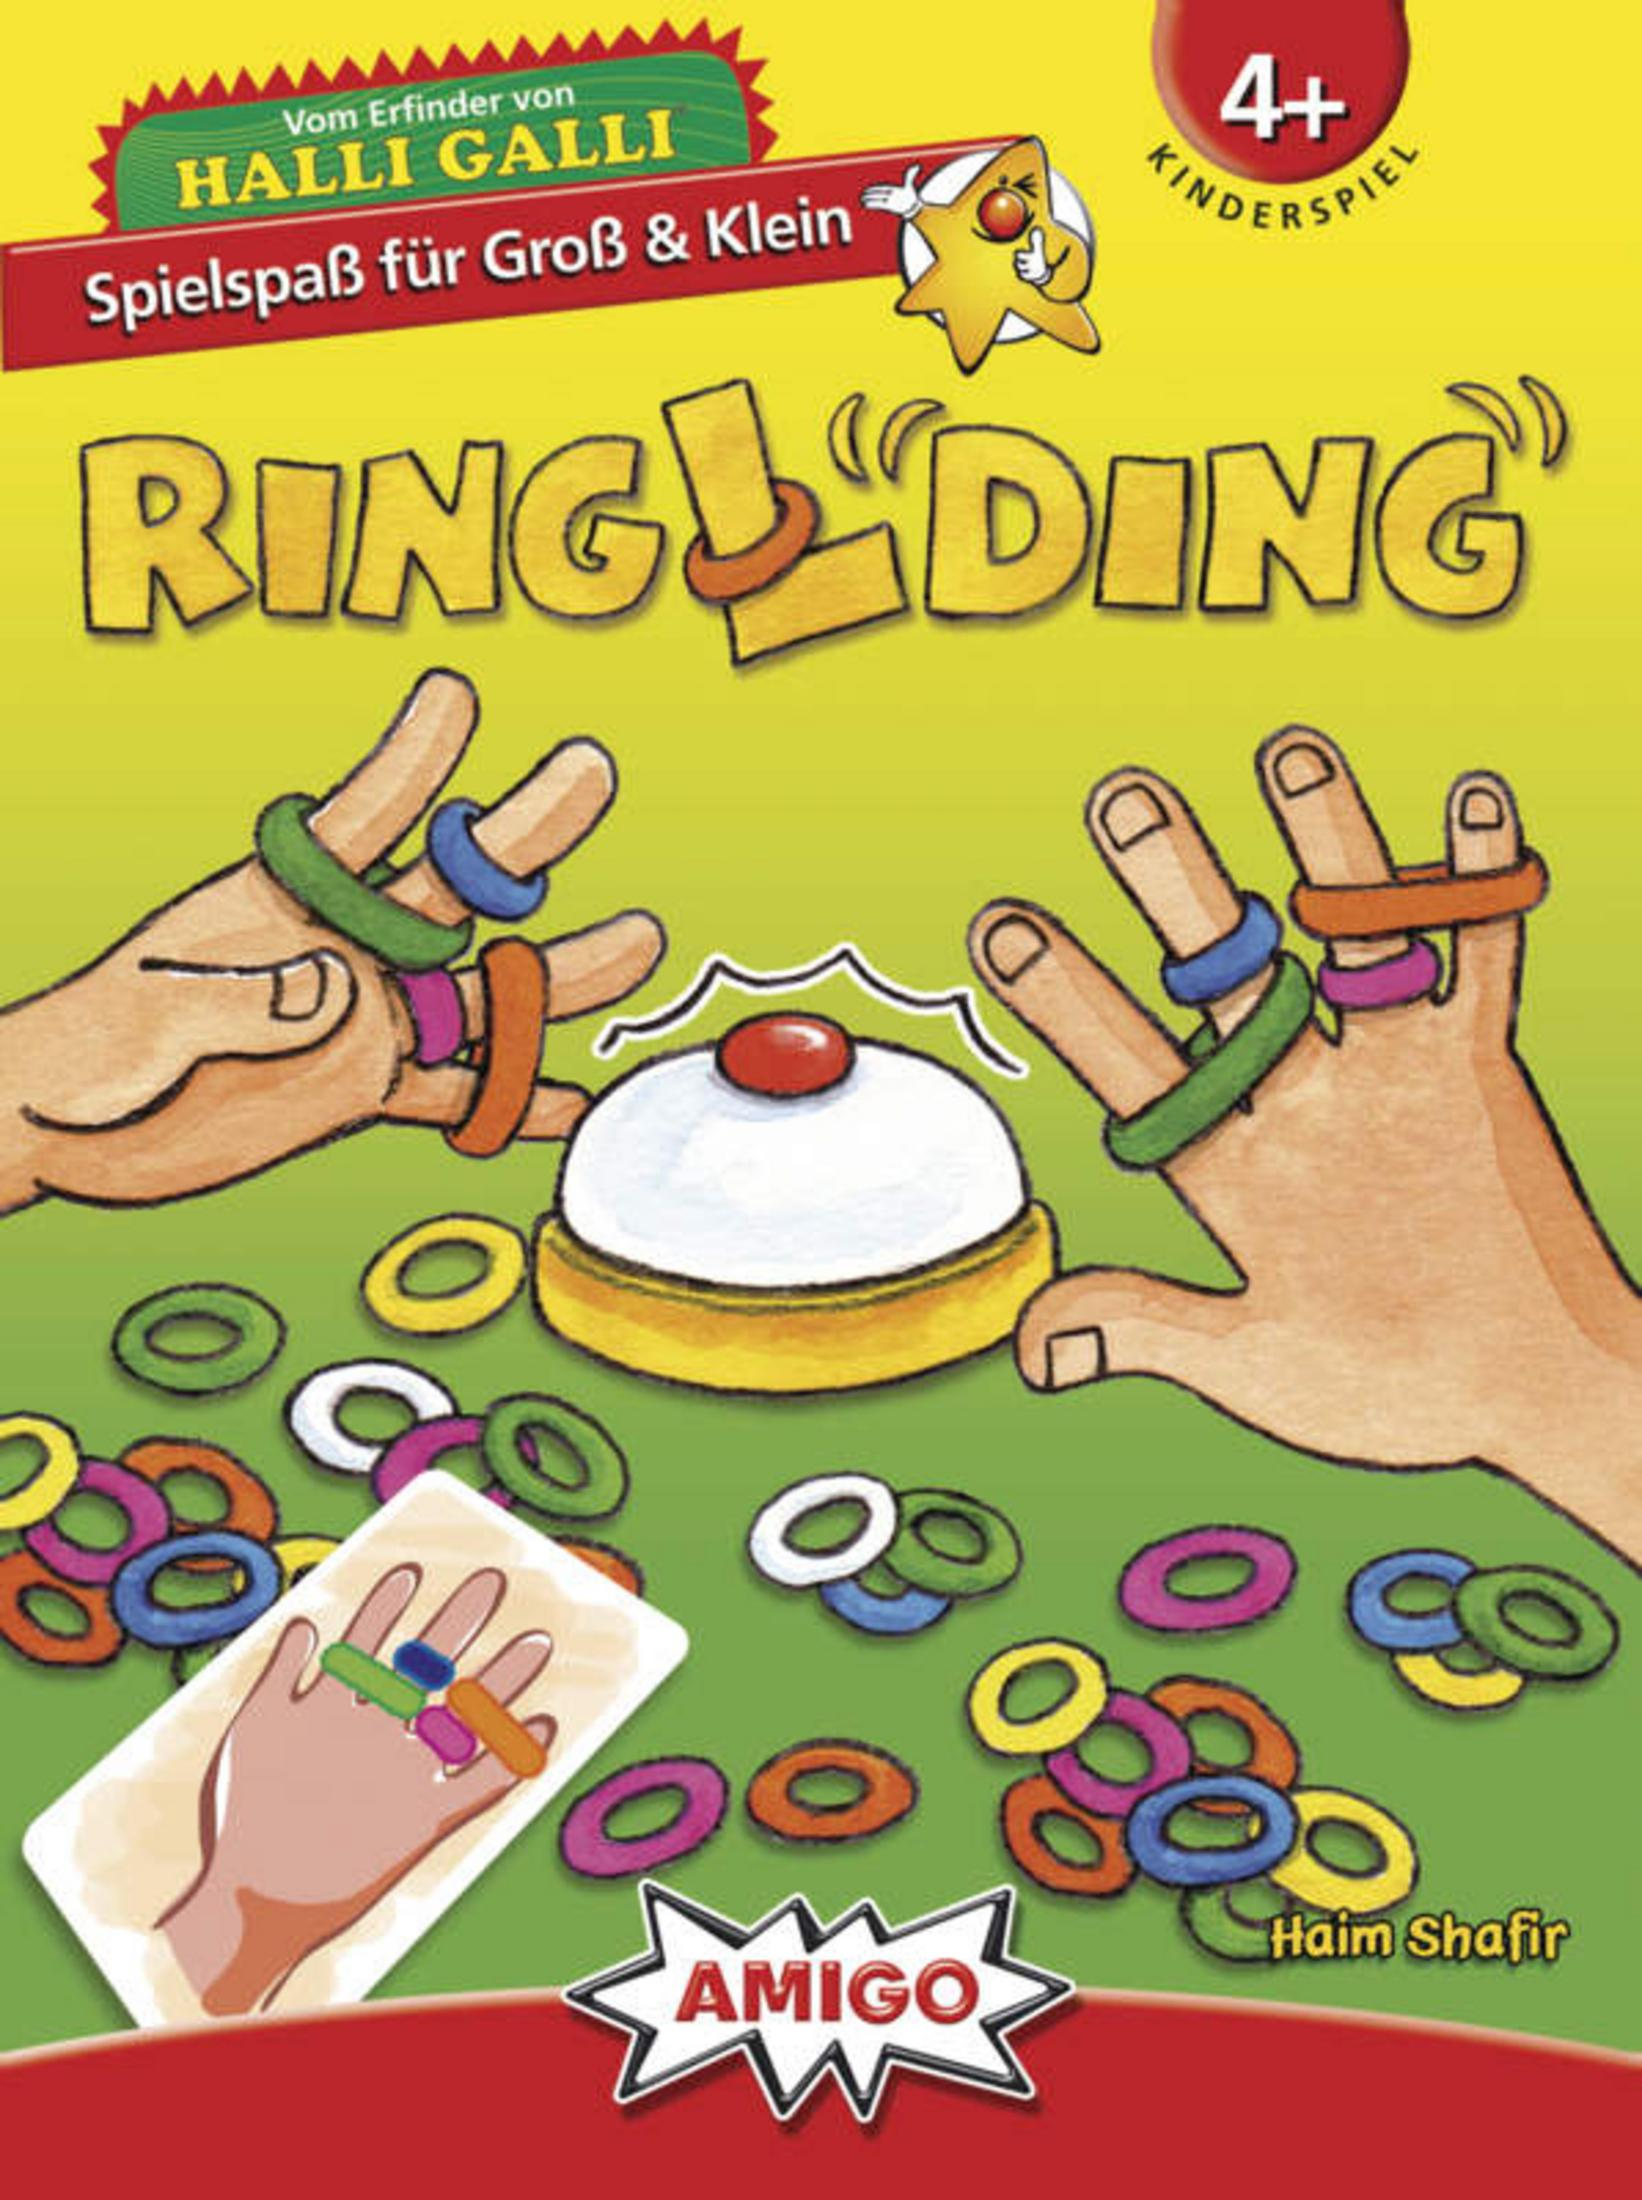 AMIGO 01735 Kinderspiel RINGLDING